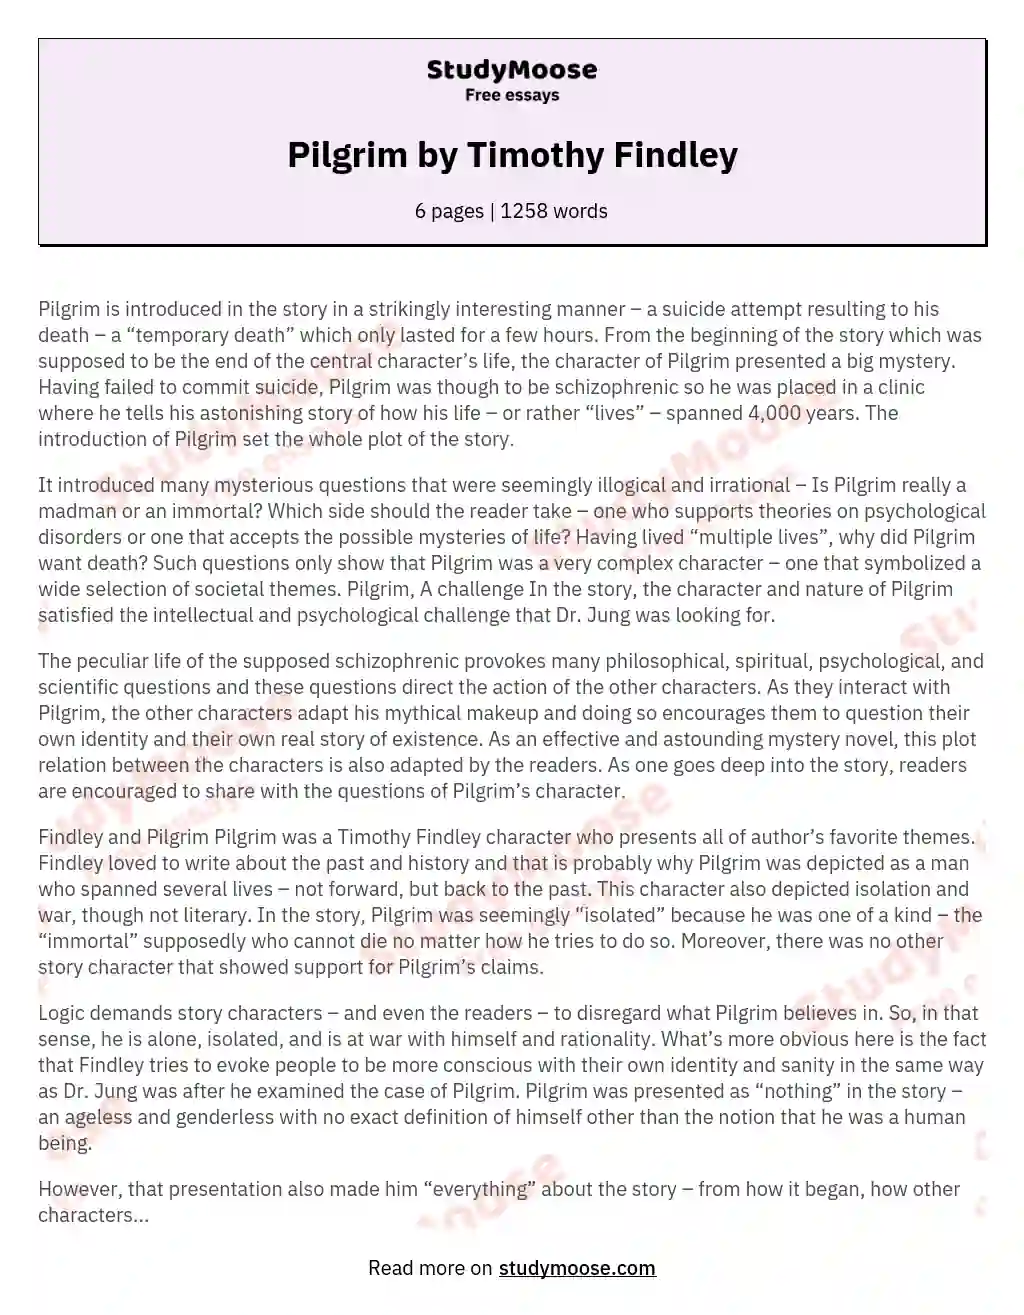 Pilgrim by Timothy Findley essay